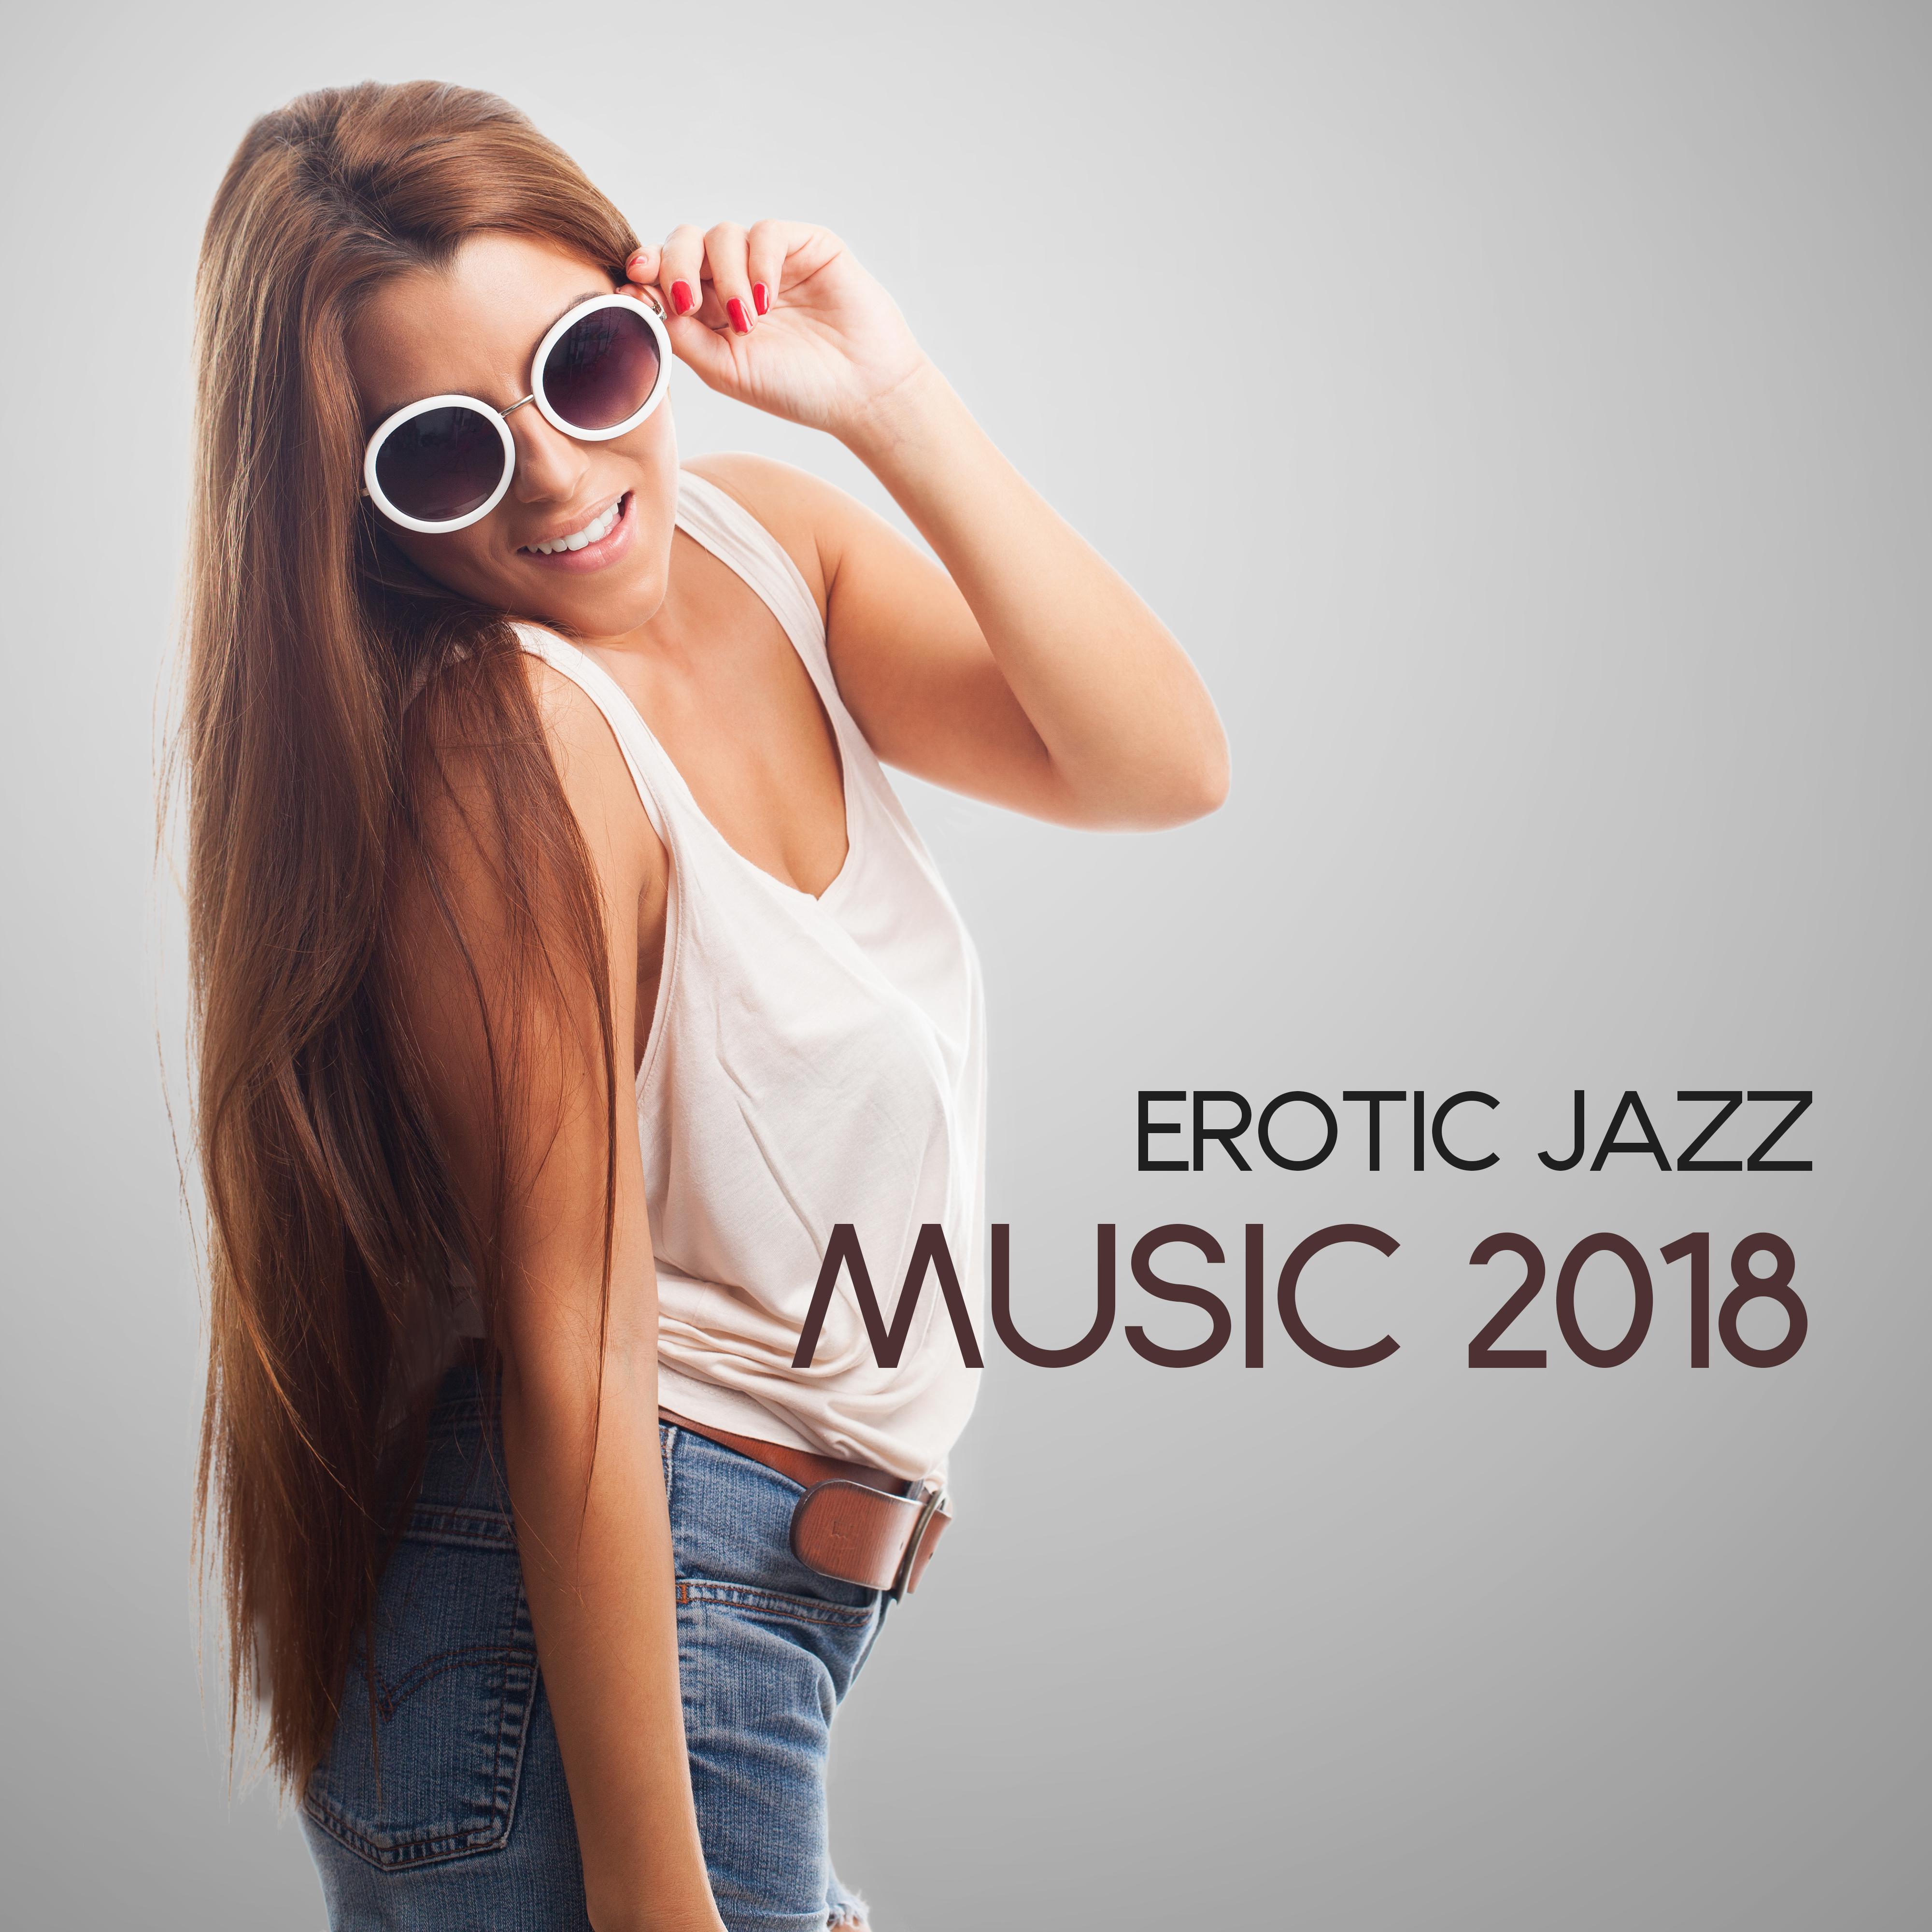 Erotic Jazz Music 2018